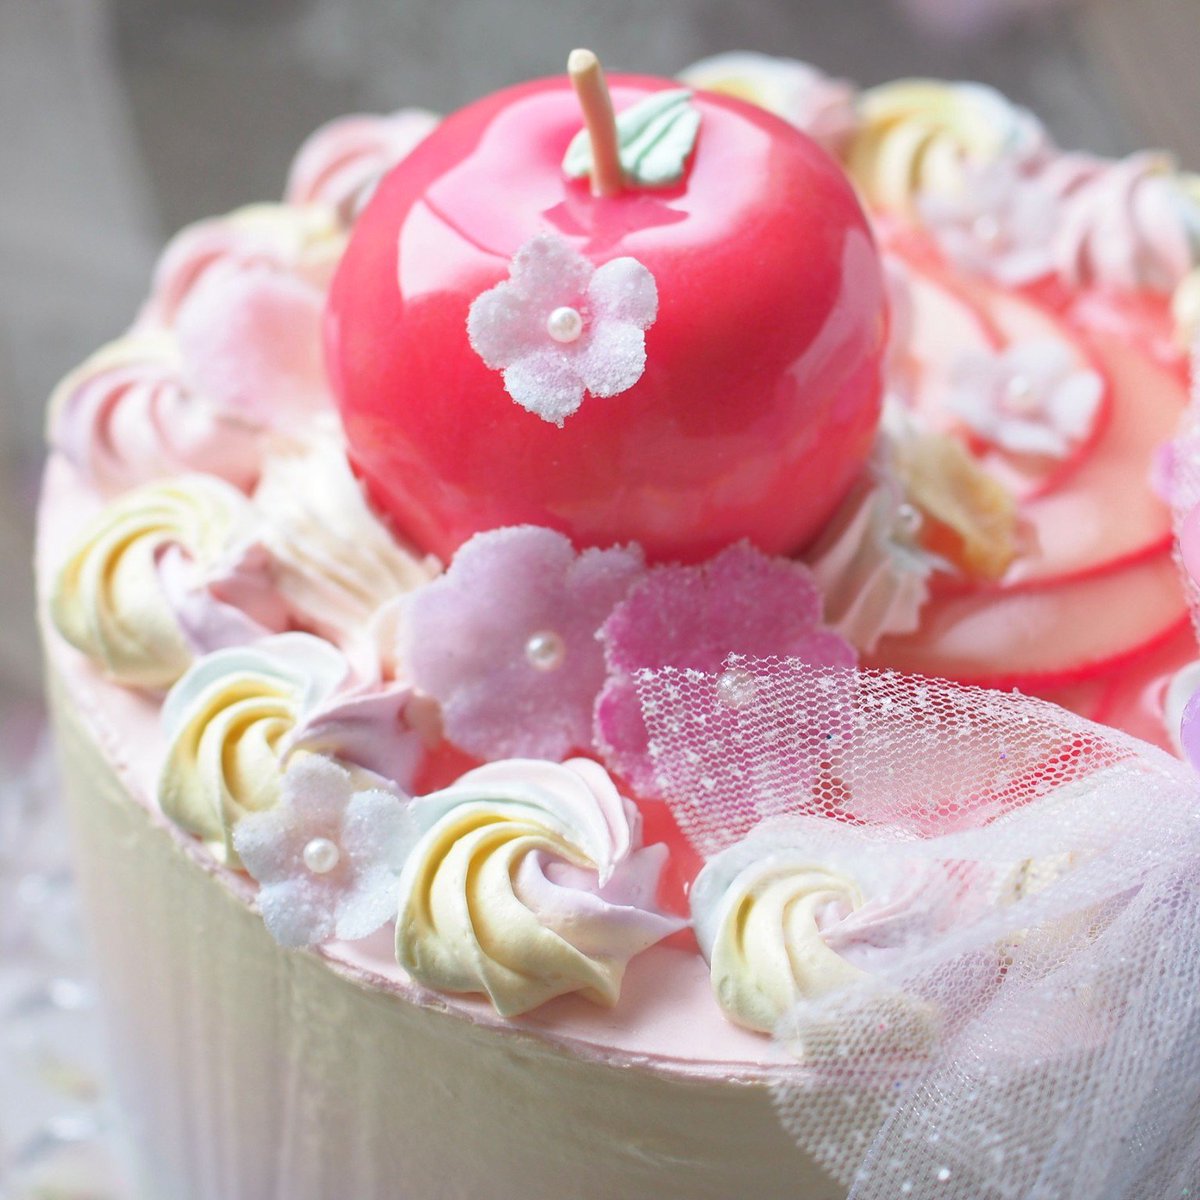 ｒｕｍｉ ゆめかわな感じのケーキを作りました レインボークリームとツヤツヤりんごが乗ってます ゆめかわいい レインボー りんご リボン ホールケーキ T Co V7sjke5oi5 Twitter